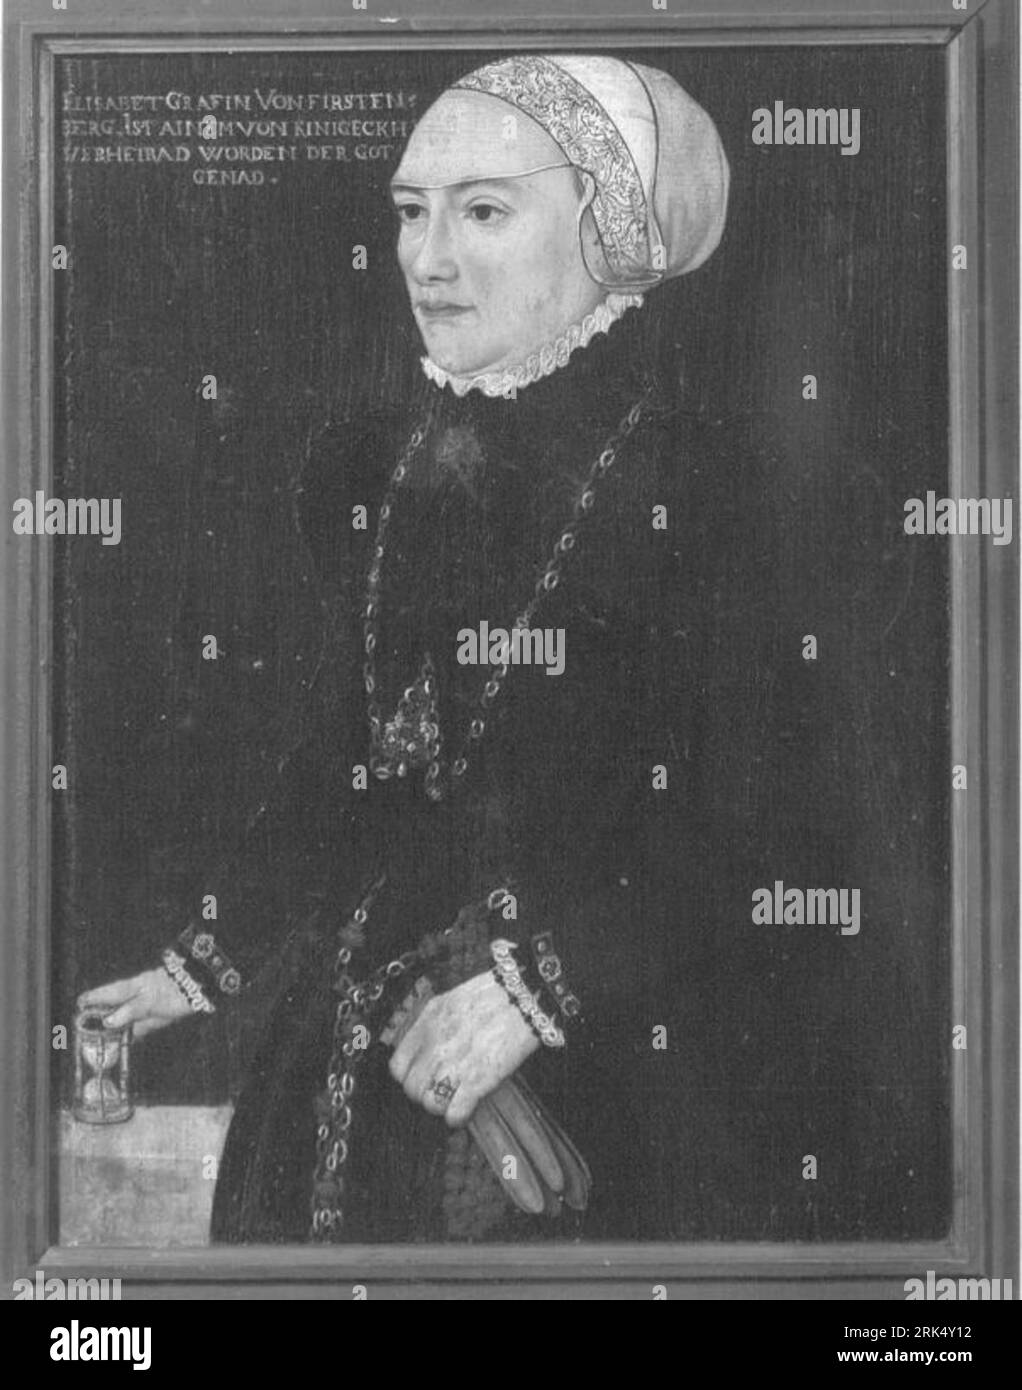 Bildnis Elisabeth Gräfin von Fürstenberg Rückseite: ausgeblichenes Wappen circa 1550 by Hans Schöpfer (I) Stock Photo